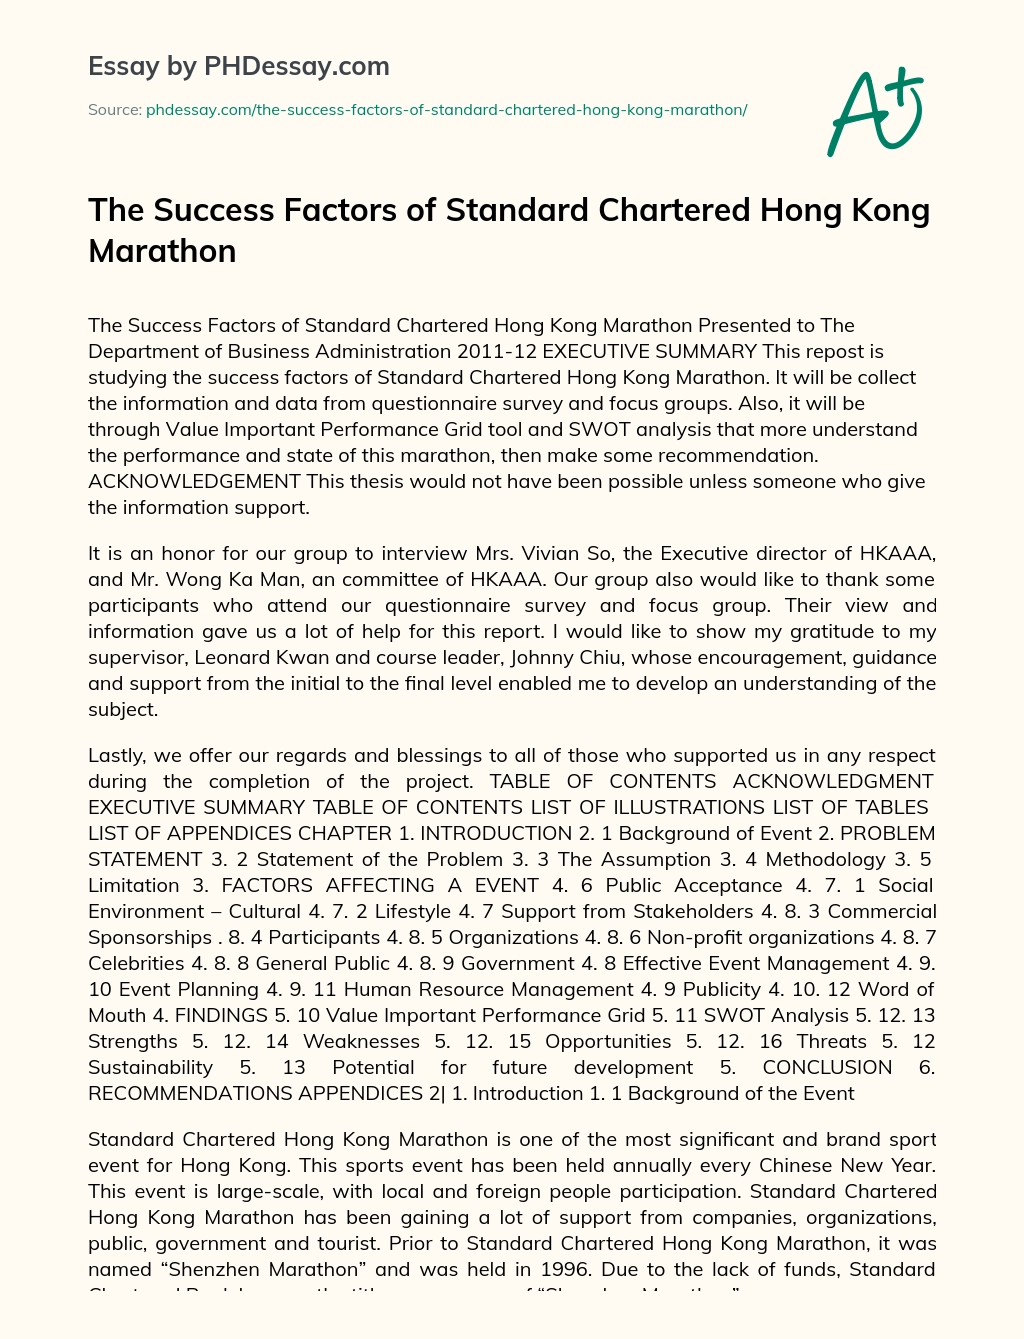 The Success Factors of Standard Chartered Hong Kong Marathon essay